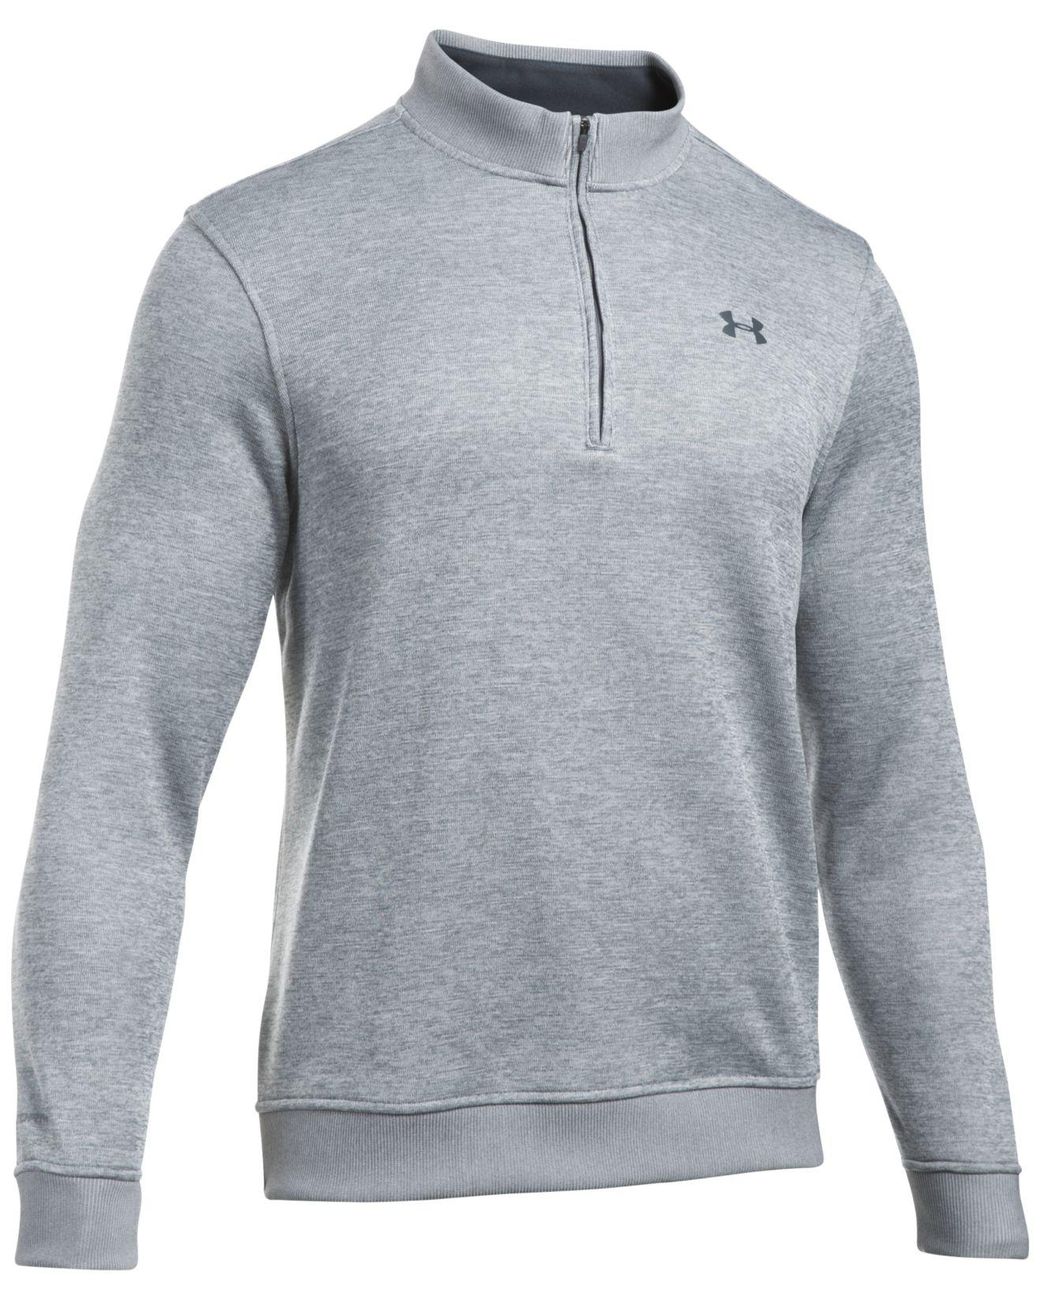 Lyst - Under Armour Men's Quarter-zip Storm-fleece Sweater in Gray for ...